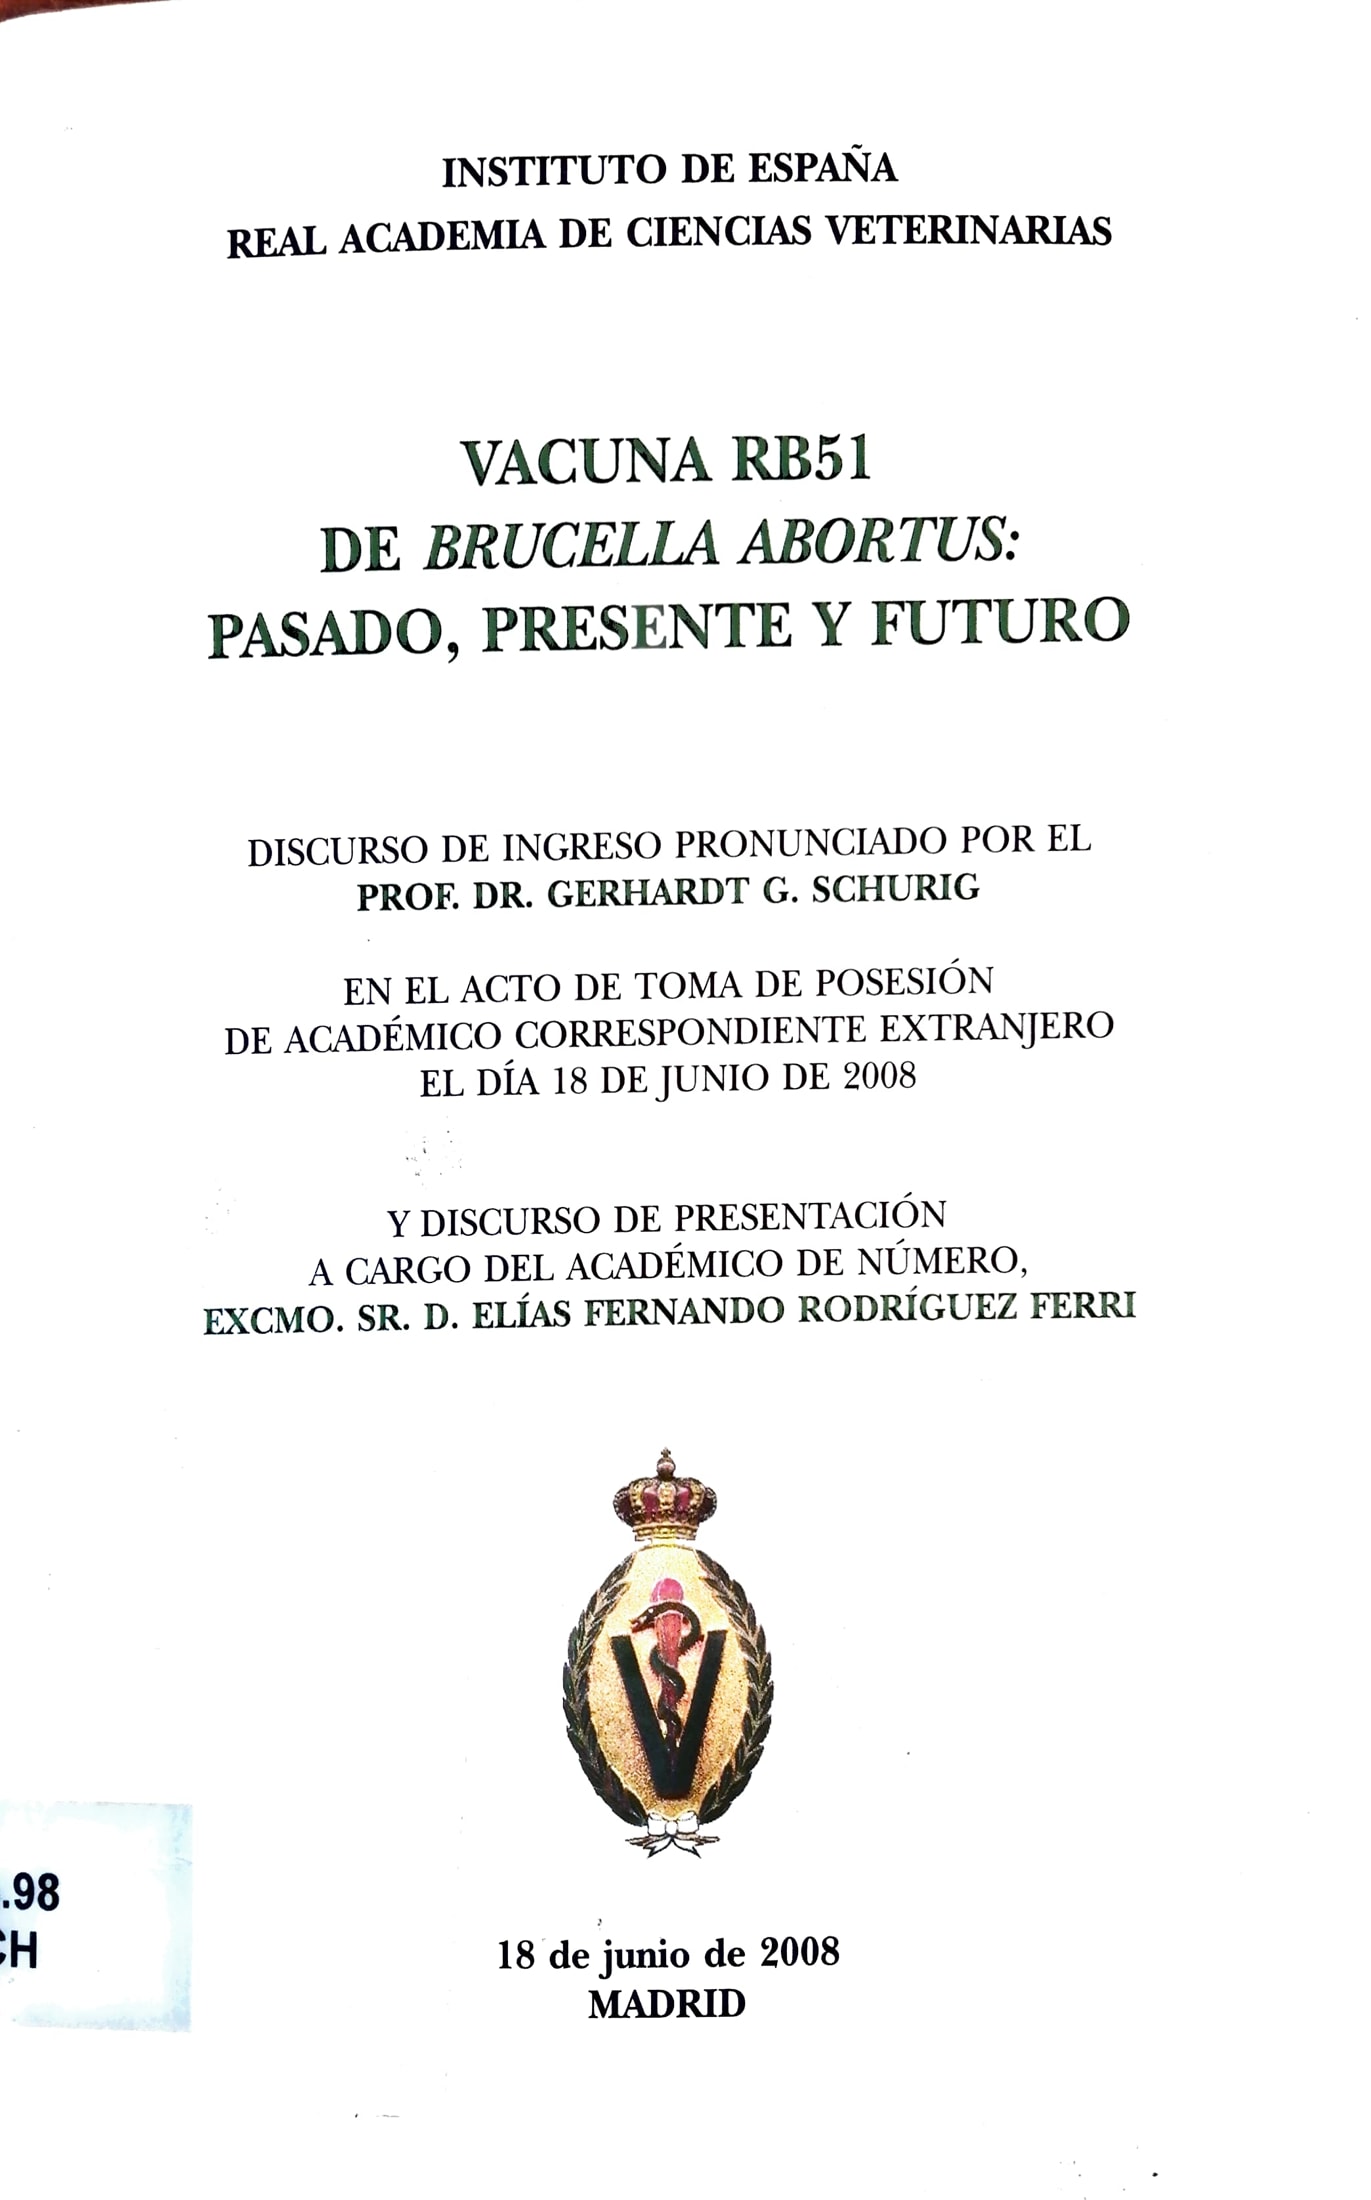 Imagen de portada del libro Vacuna RB51 de "Brucella abortus"